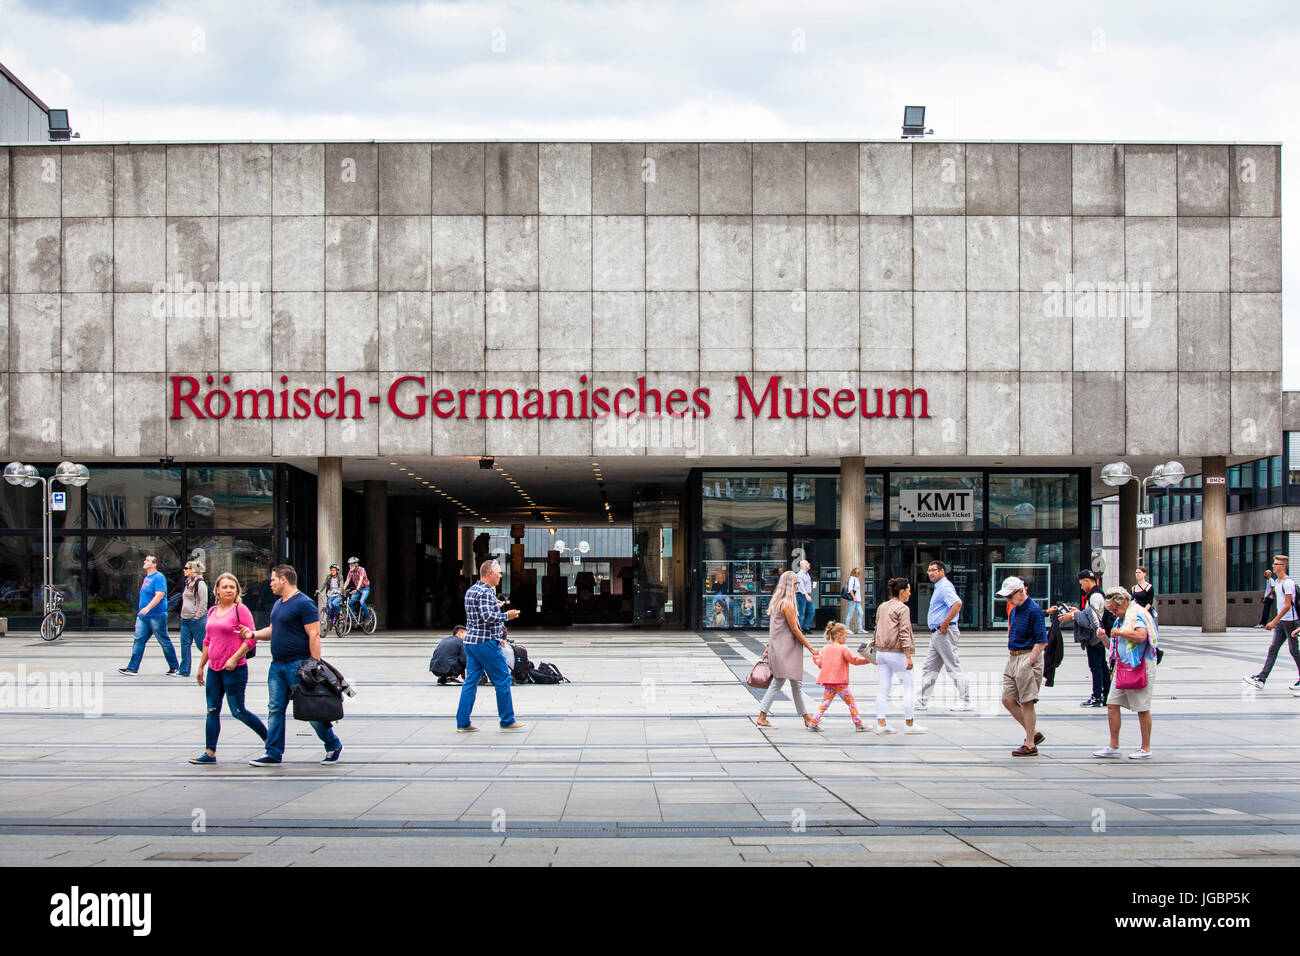 L'Europe, l'Allemagne, en Rhénanie du Nord-Westphalie, Cologne, le musée romain-germanique à la place Roncalli. Banque D'Images